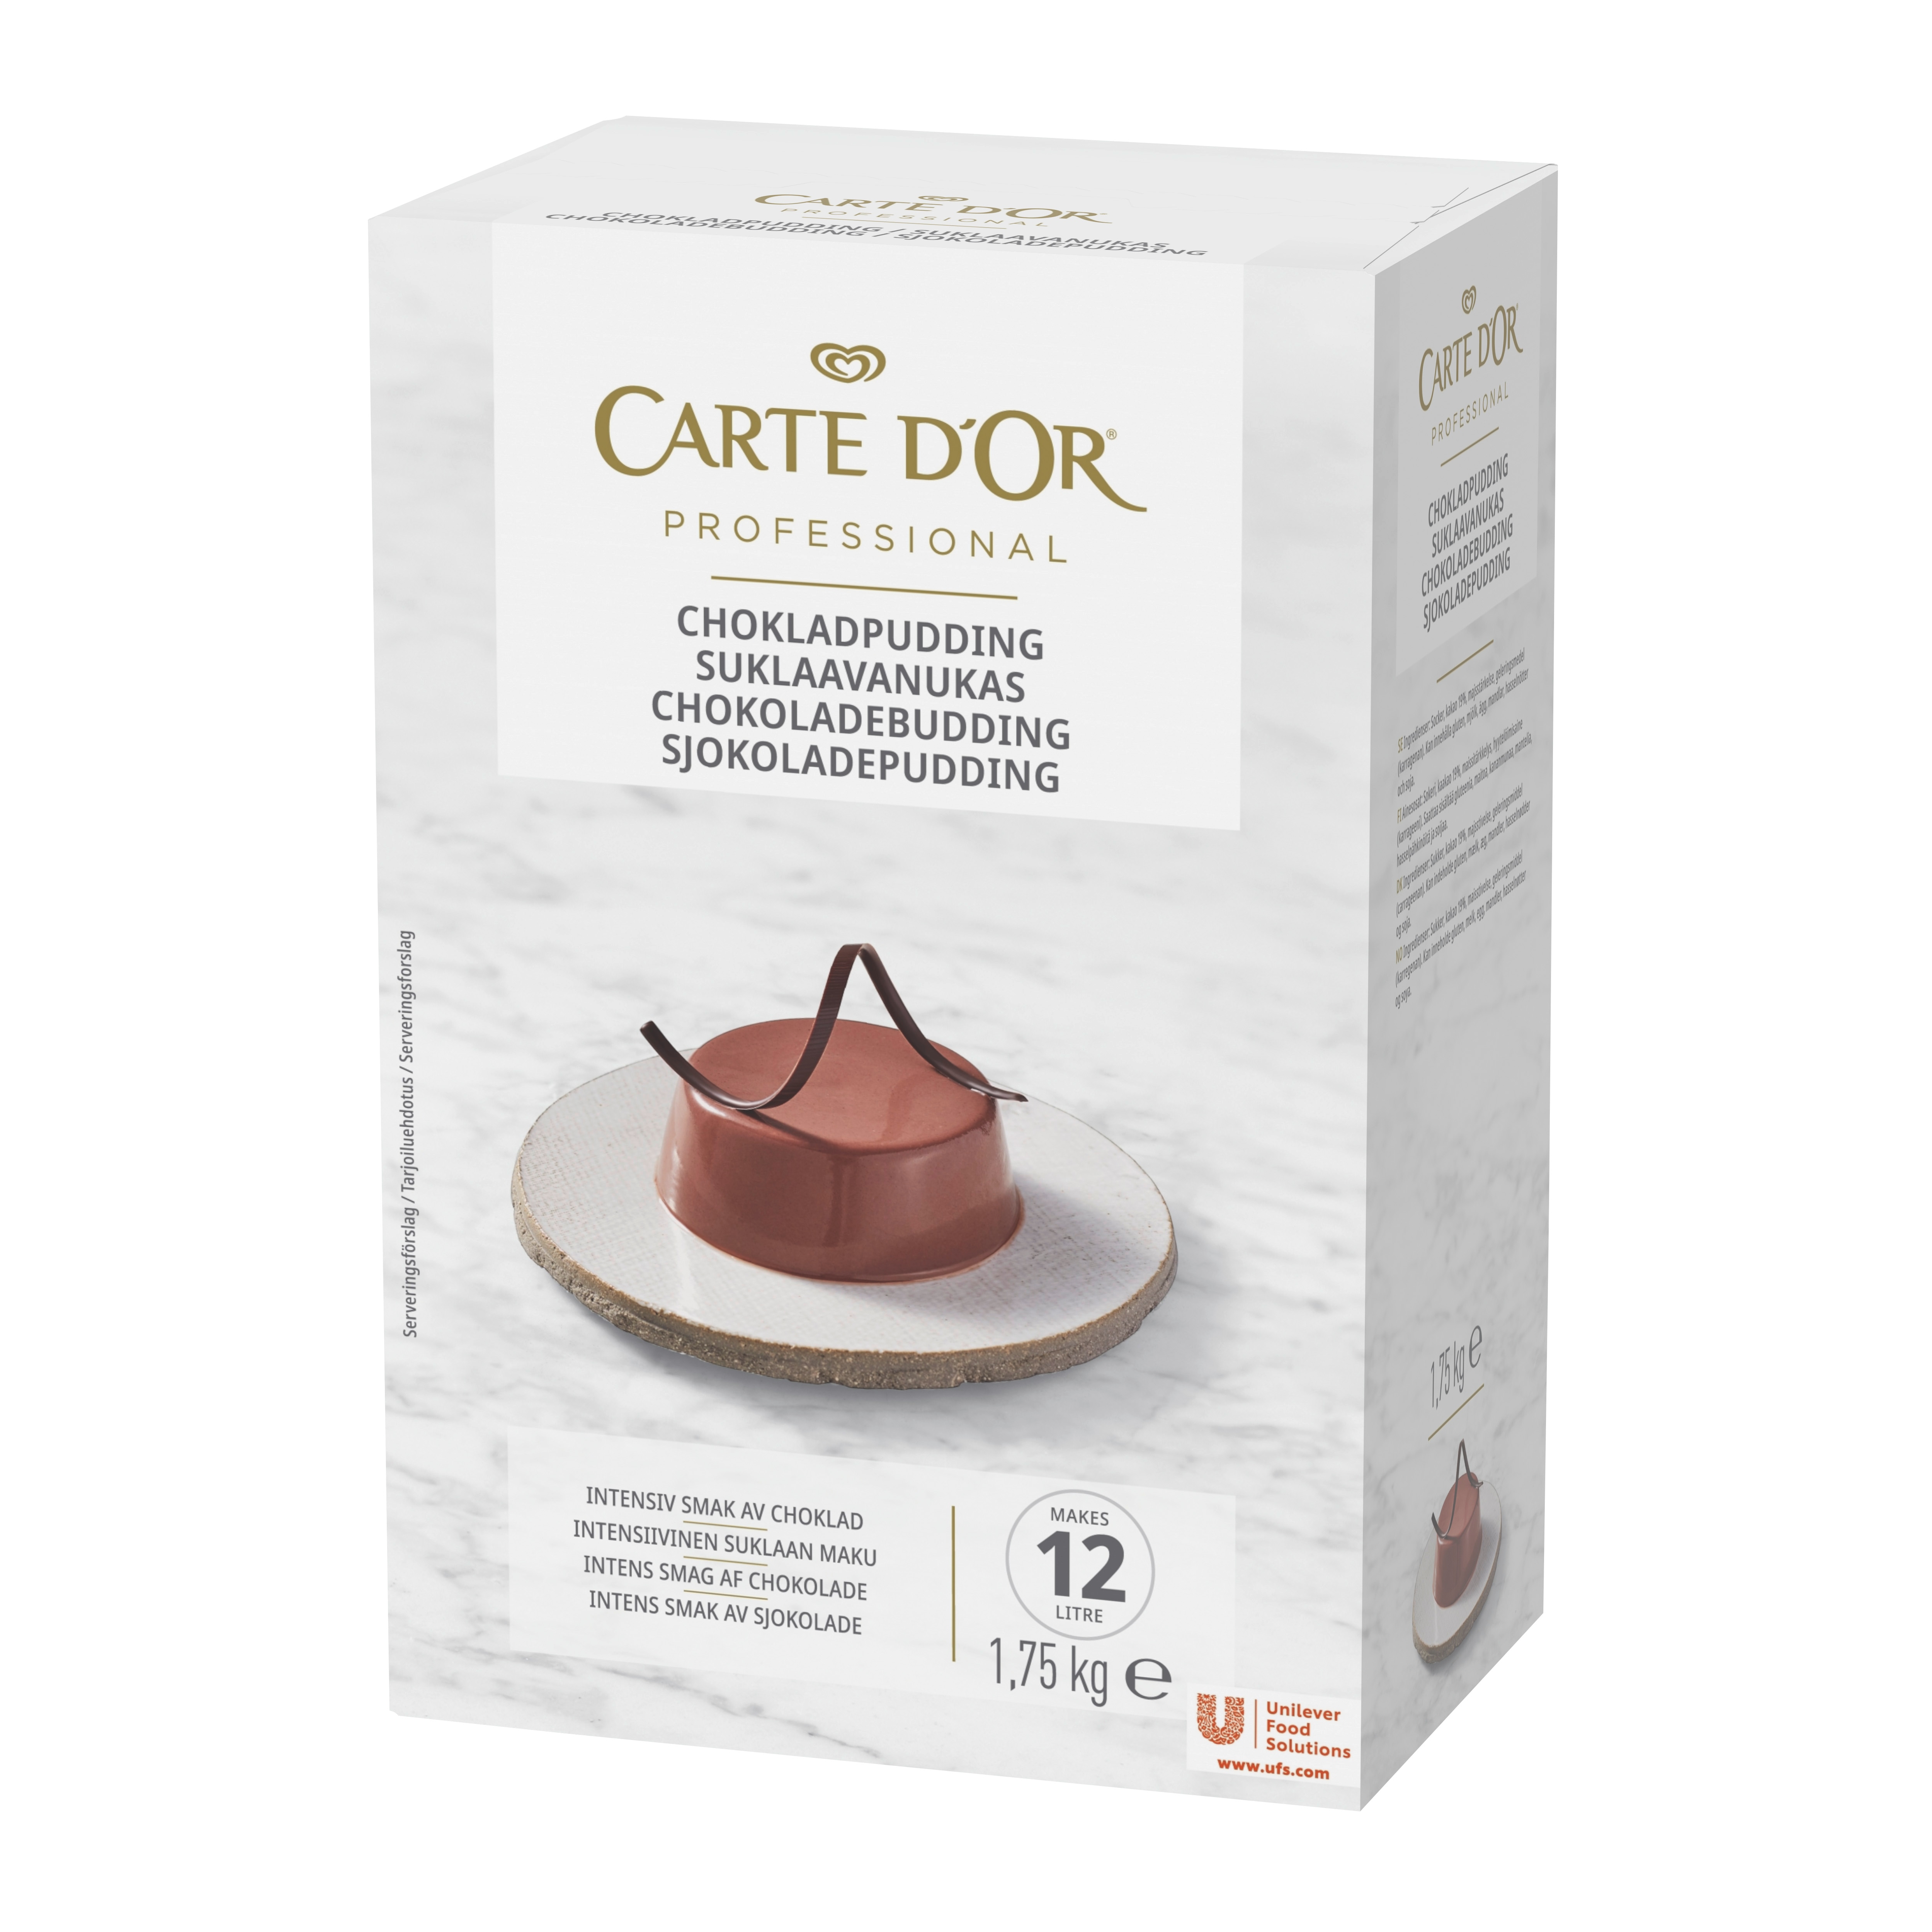 CARTE D'OR Chokladpudding 1 x 1,75 kg - 